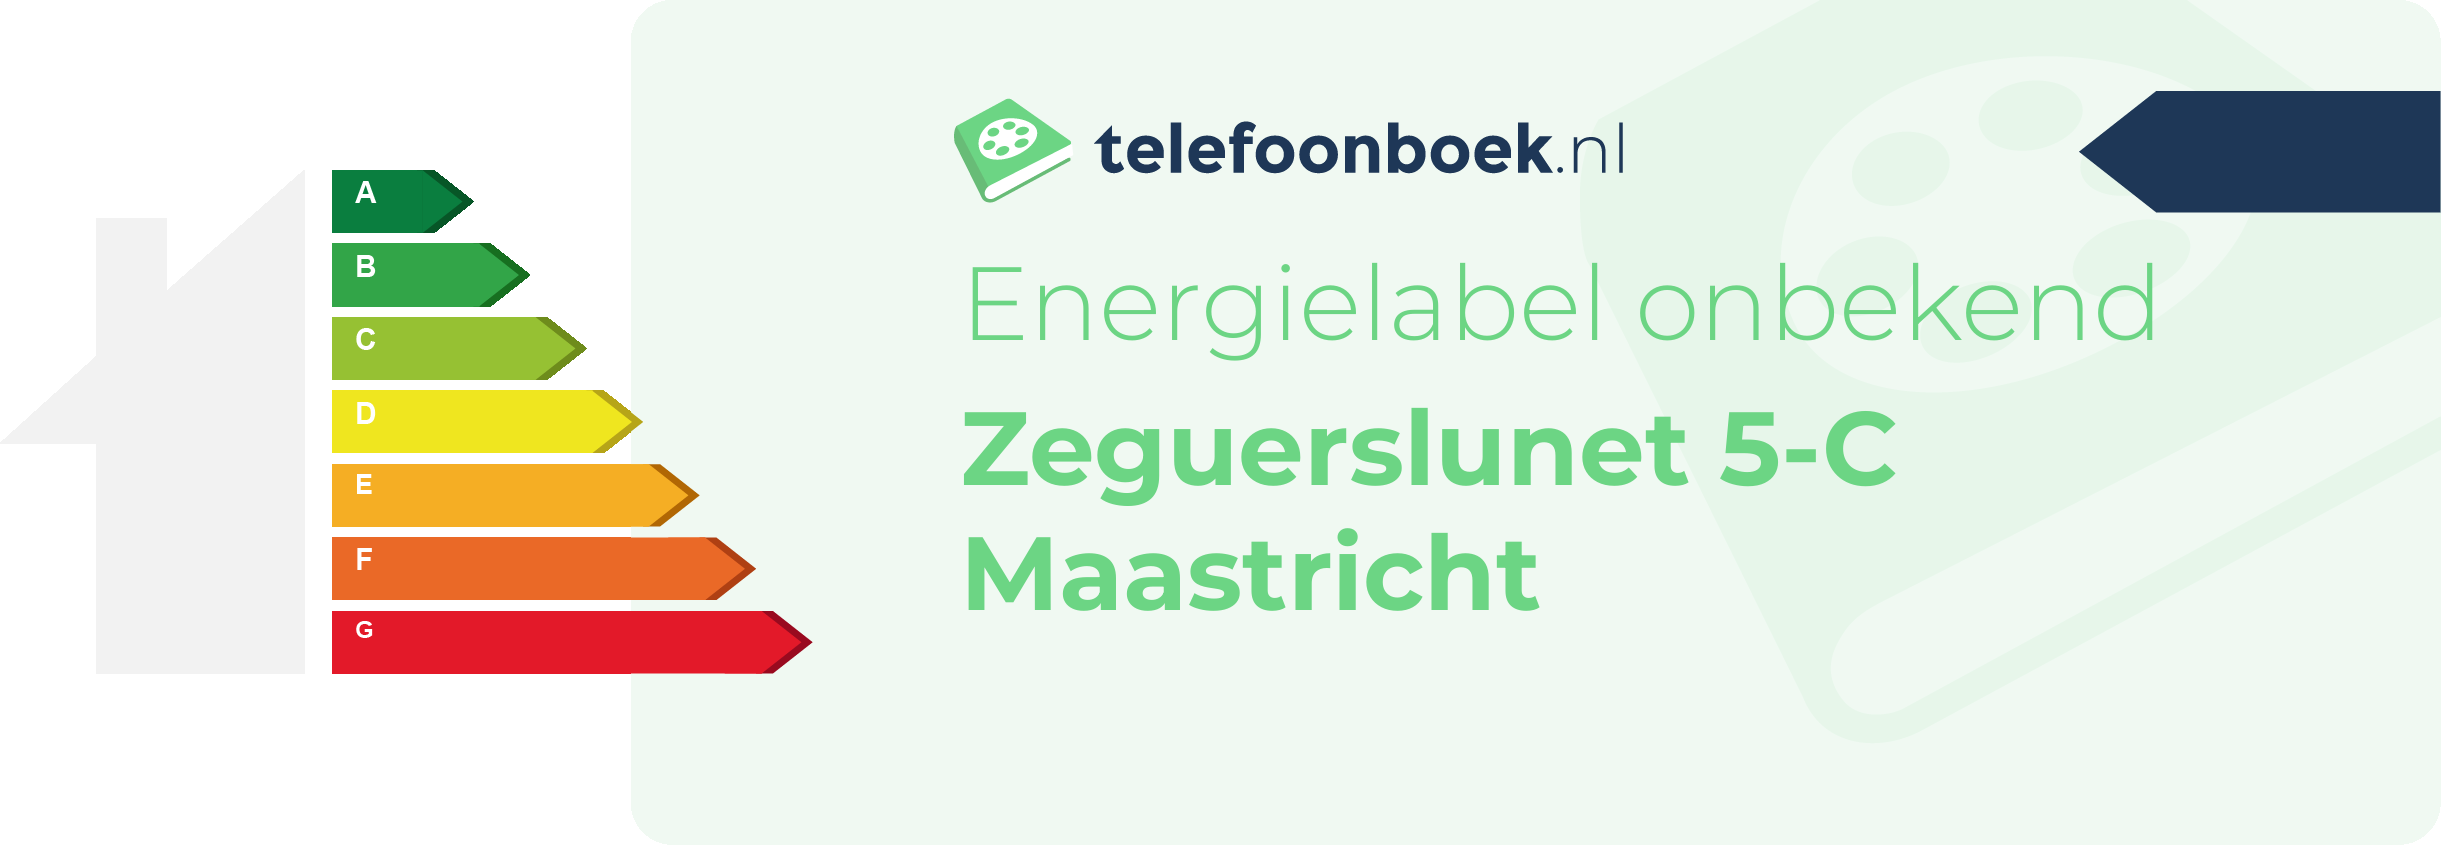 Energielabel Zeguerslunet 5-C Maastricht